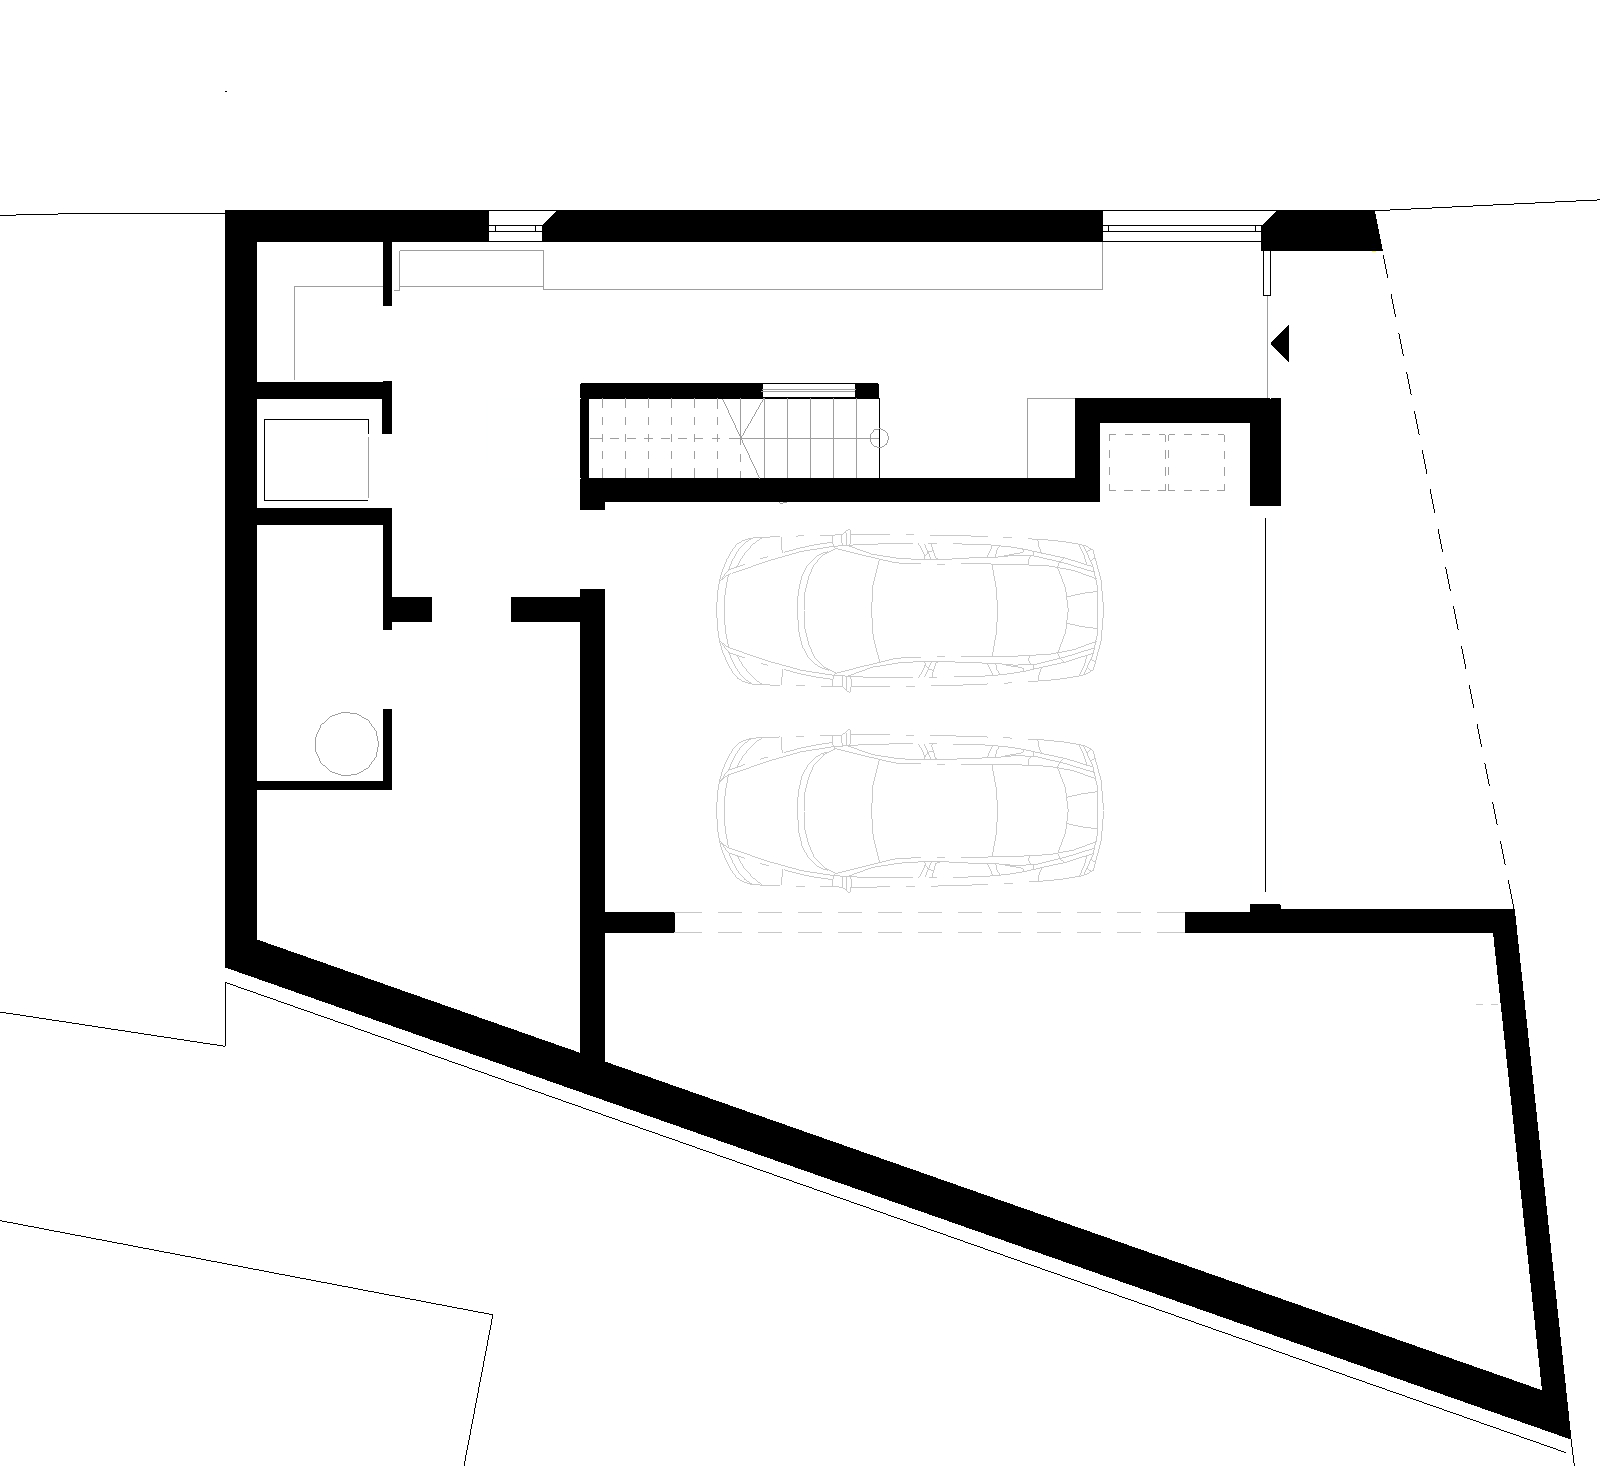 bhe-architektur-Wohnhaus-HS19_18